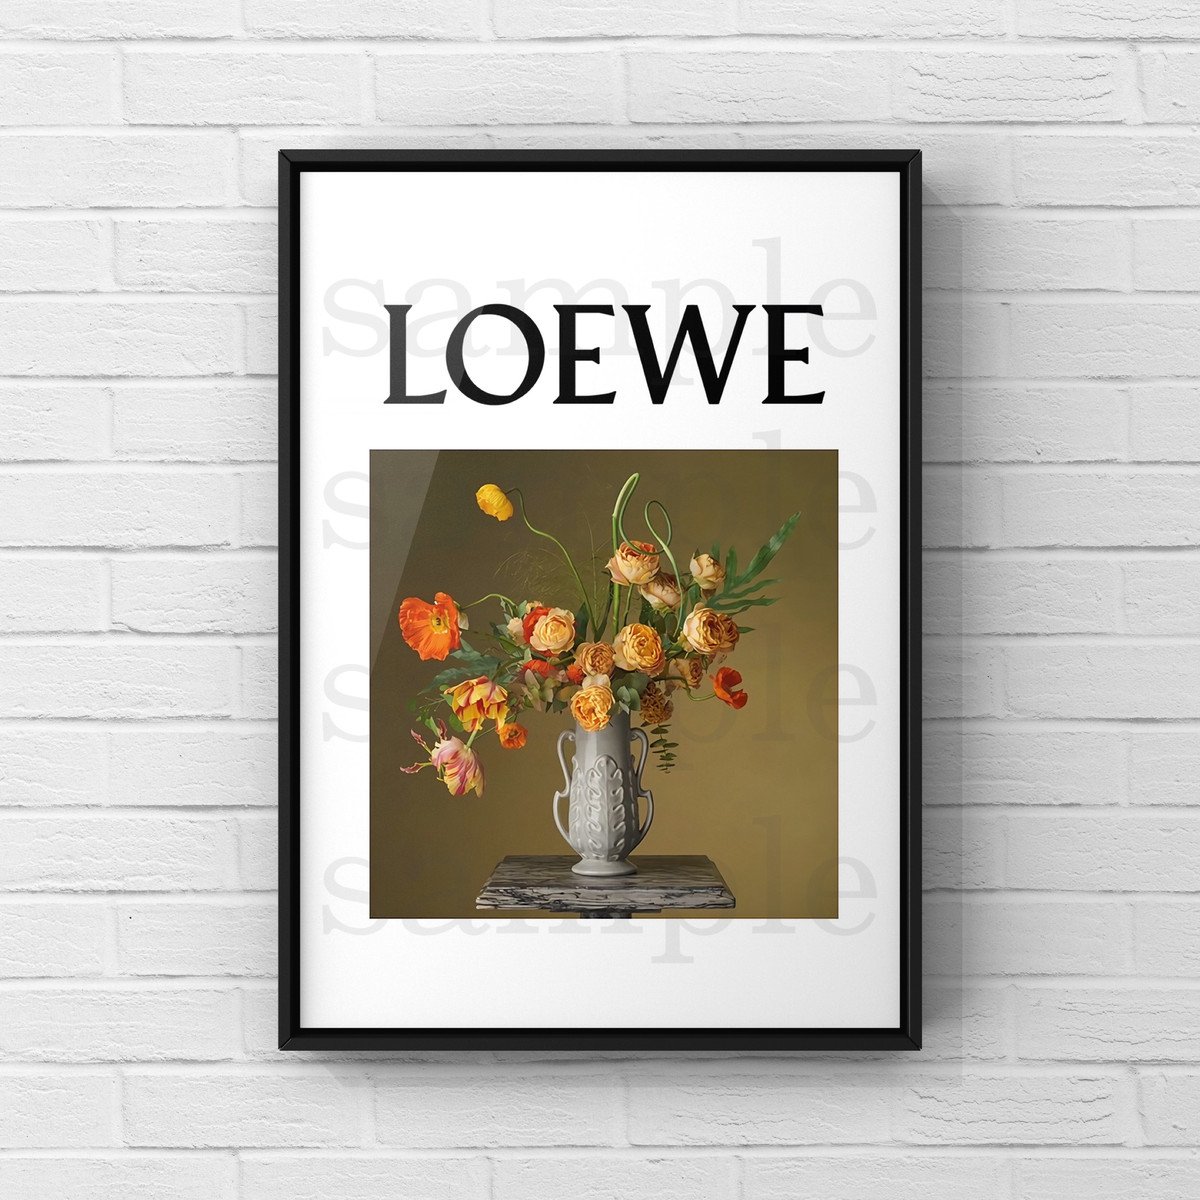 6 Loewe フラワー アートポスター Sena S Artgallery オマージュ アートポスター